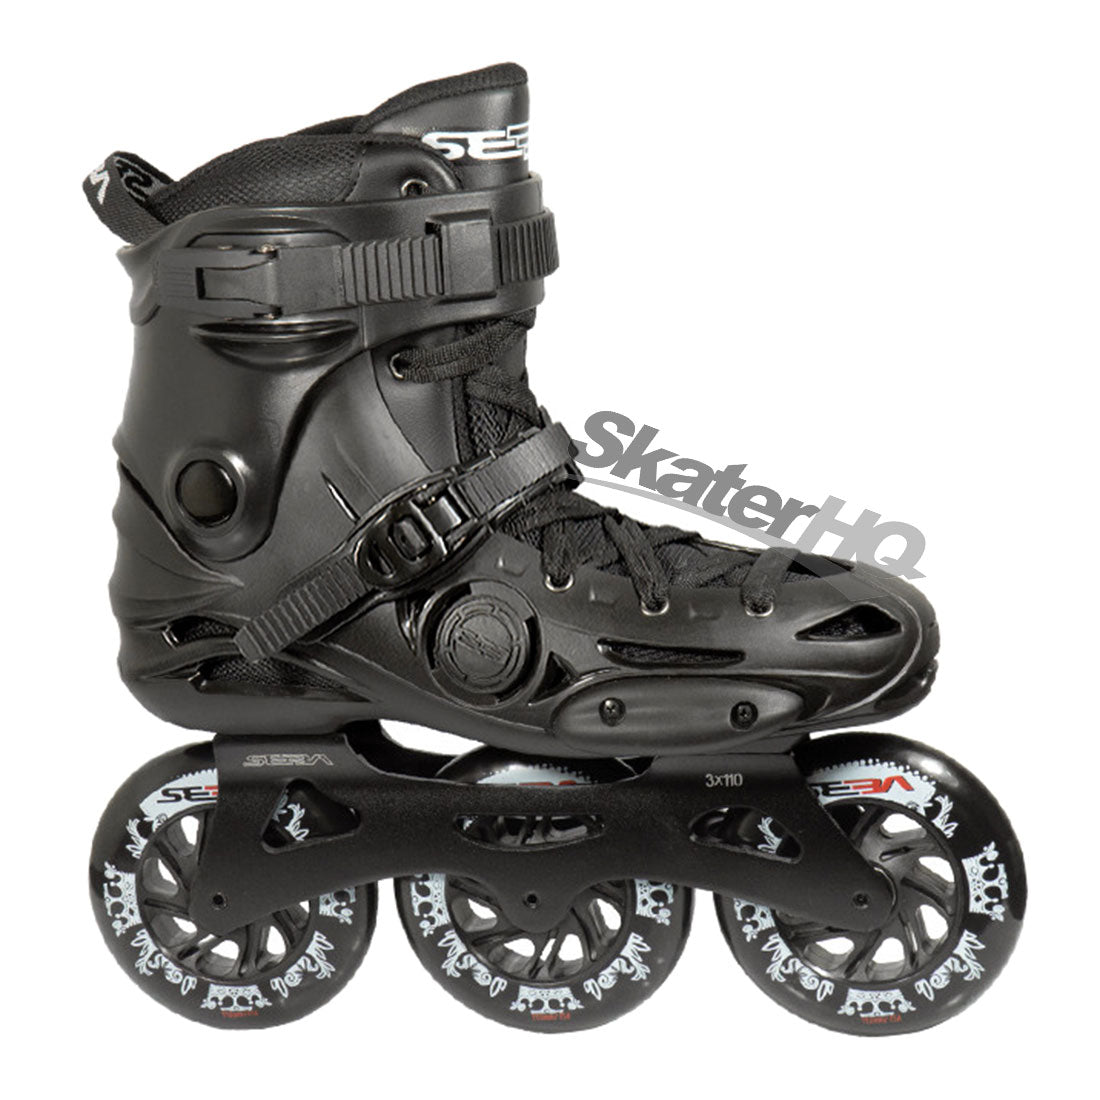 Seba E3 310 Premium Black - 7.5US EU40 Inline Rec Skates